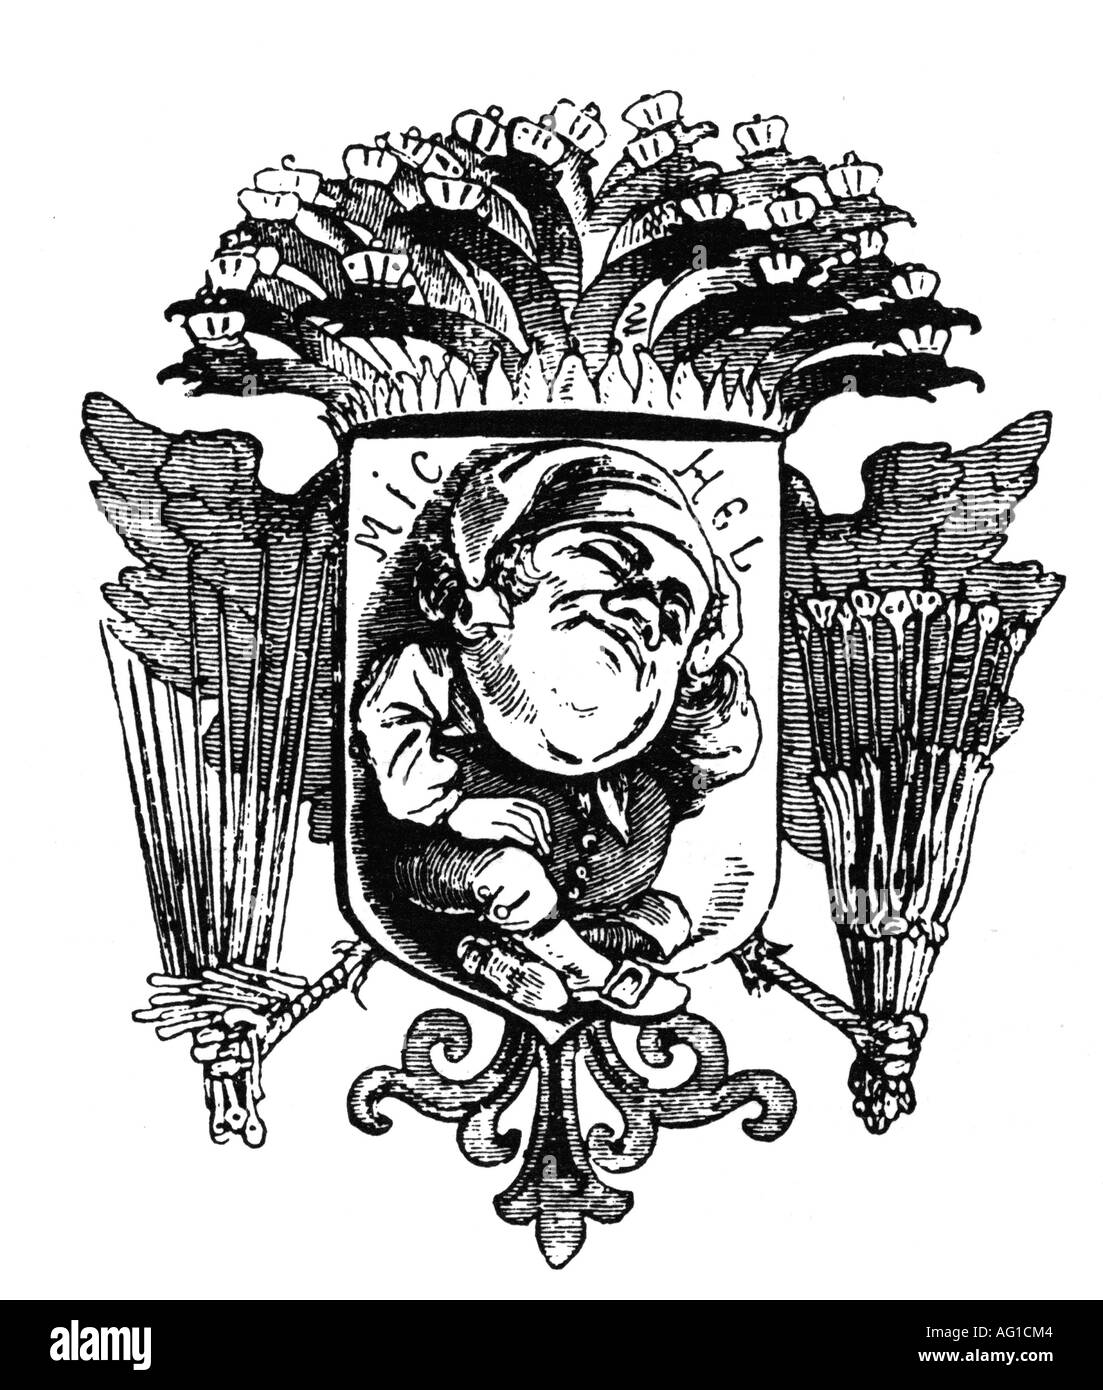 Deutscher Michel, personification of the German nation, caricature, cartoon, 'Wappen für das deutsche Volk vor 1848' (Crest for the German people before 1848), from 'Leuchtkugel', 1849, Stock Photo